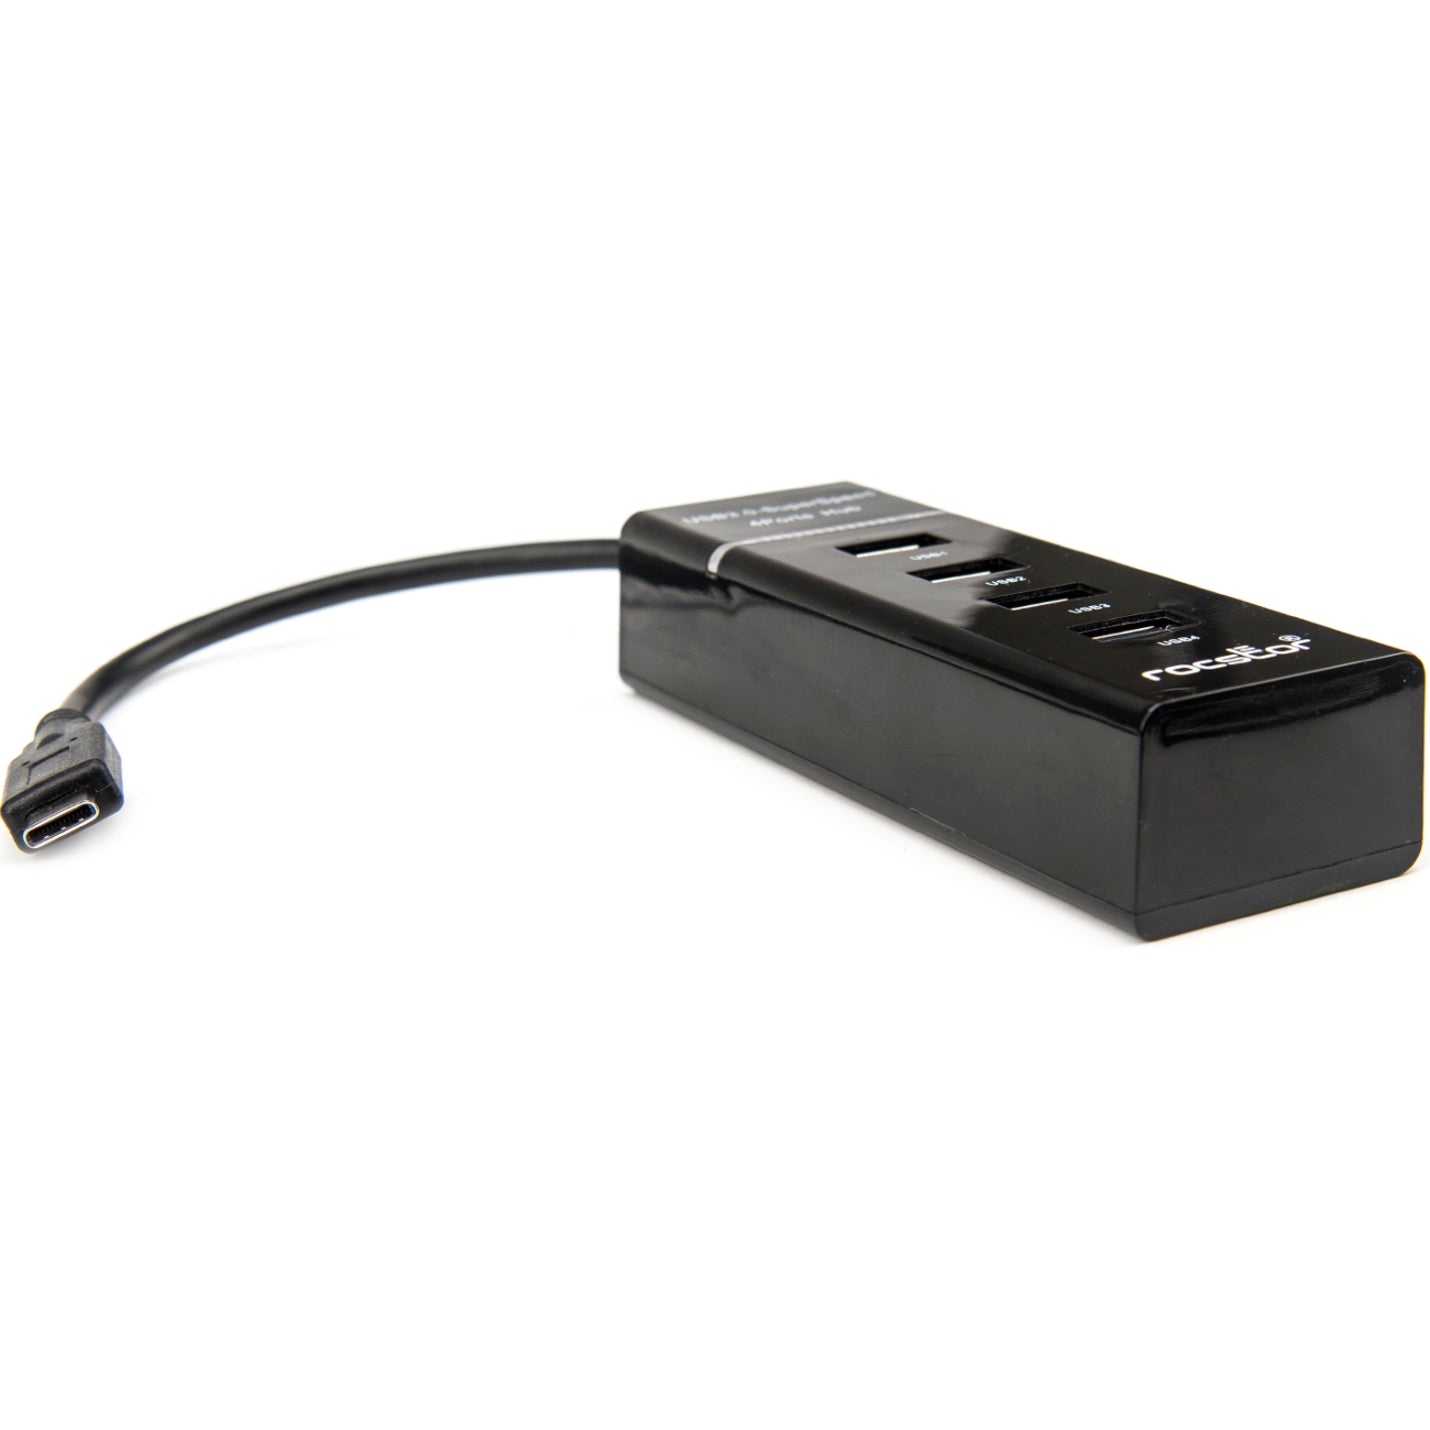 Rocstor Y10A228-B1 Premium Mince Portable 4 Hub USB C 4 Ports USB 3.0 Alimenté par Bus